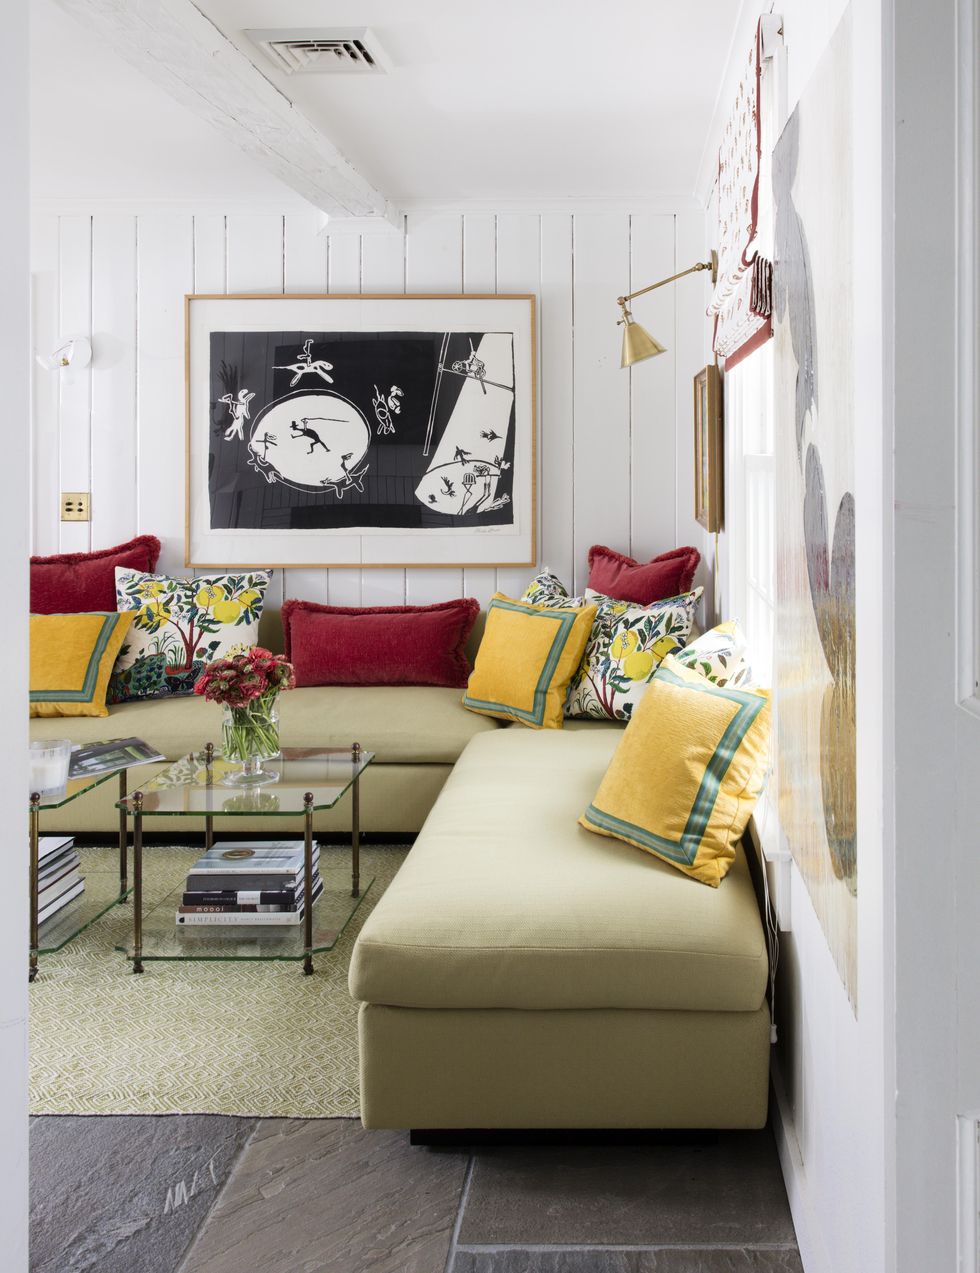 hình ảnh phòng khách nhỏ với tường và trần sơn trắng, sofa xanh als nhạt, gối tựa màu sắc, bàn trà kính, tranh nghệ thuật treo tường